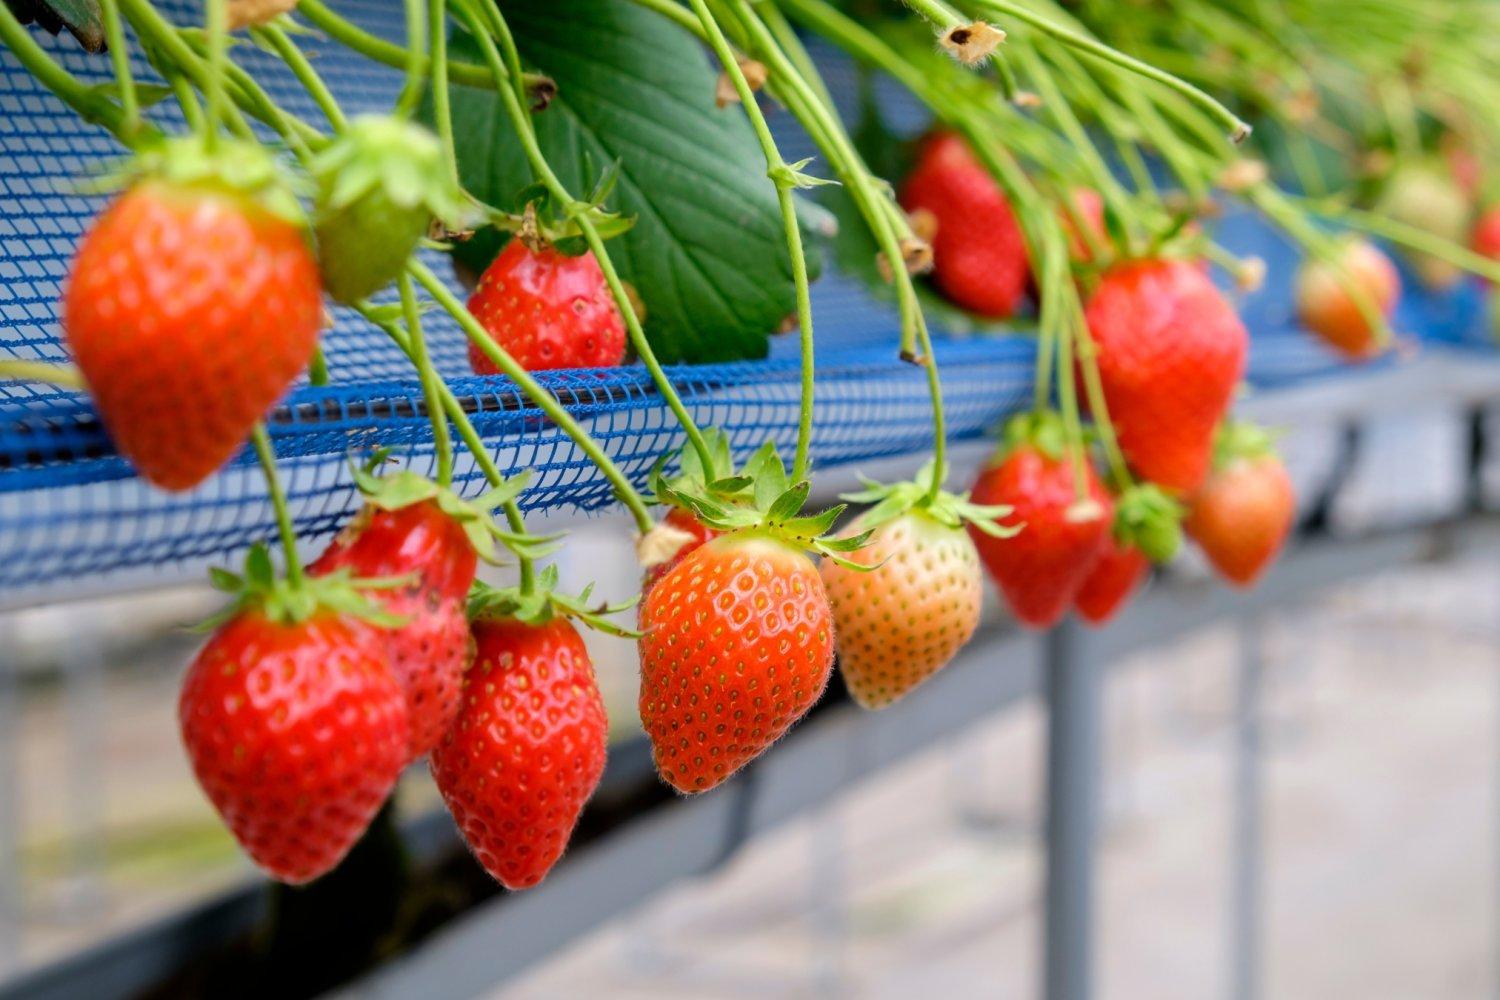 【章姫聖地】東京山梨富士果園採草莓60分鐘吃到飽體驗